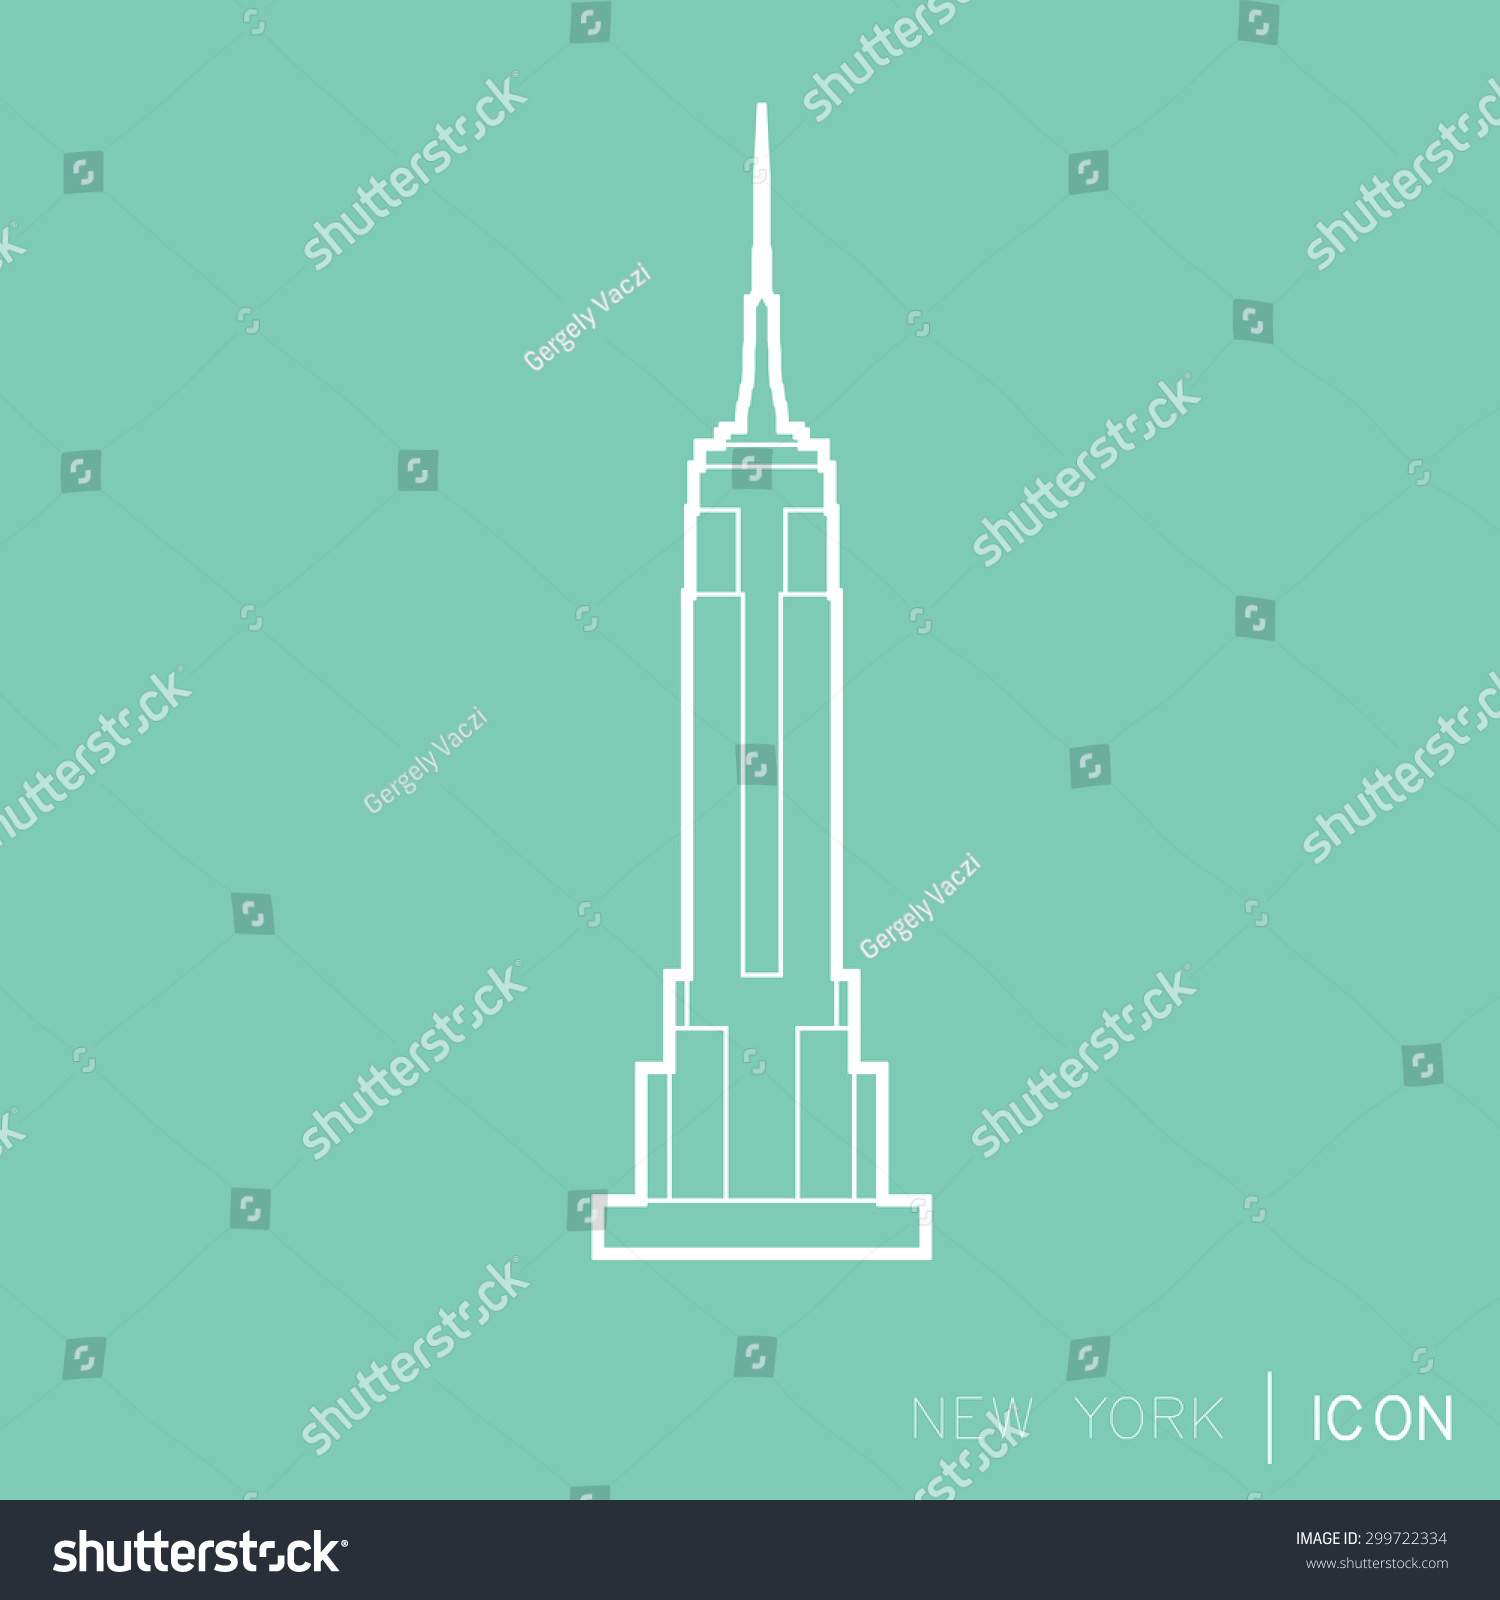 Empire Statae Building line icon #299722334